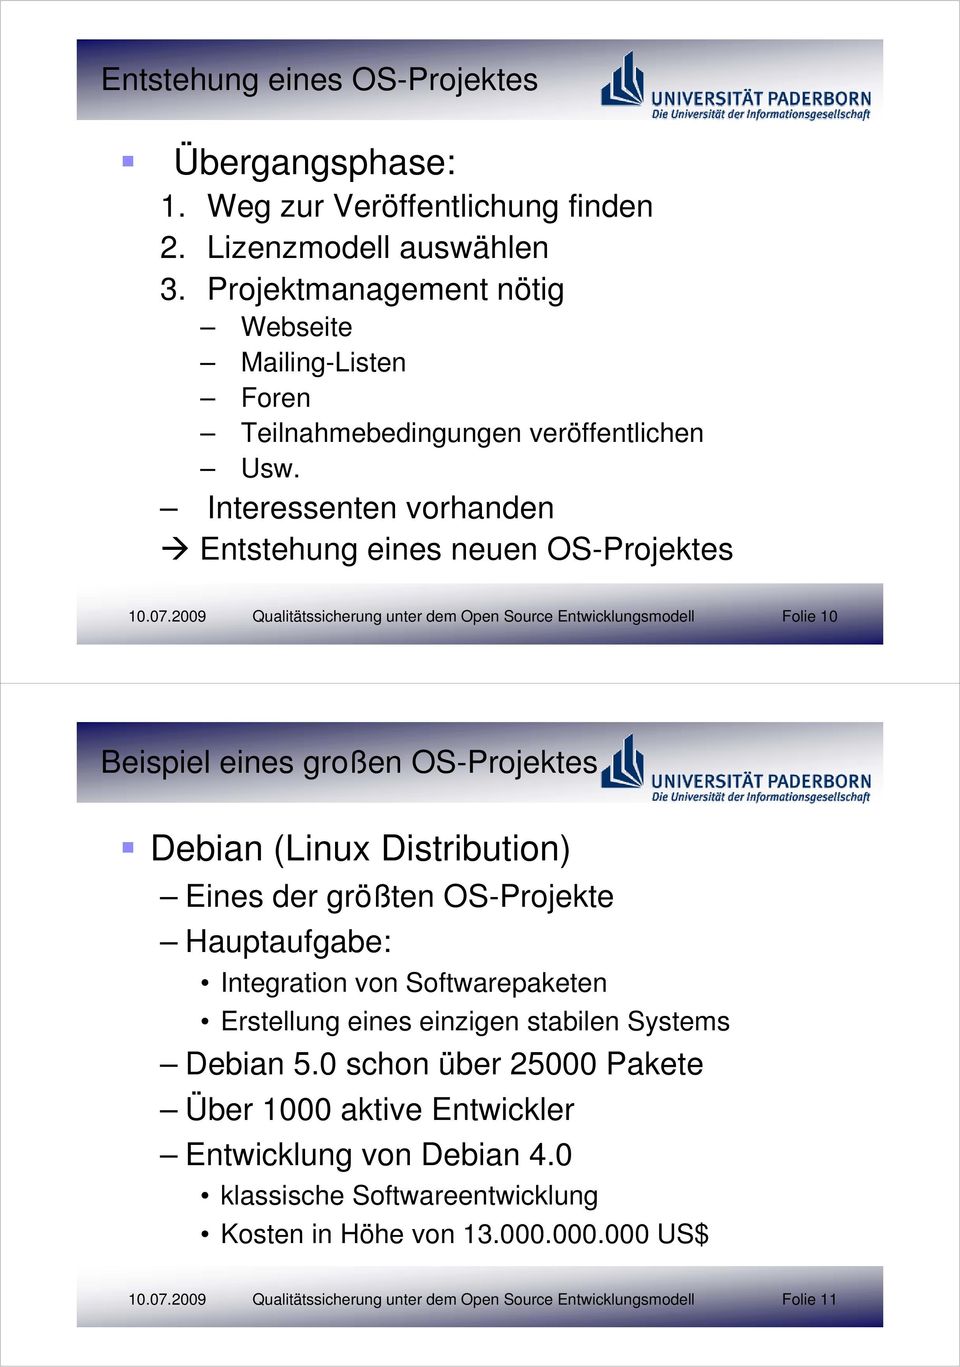 2009 Qualitätssicherung unter dem Open Source Entwicklungsmodell Folie 10 Beispiel eines großen OS-Projektes Debian (Linux Distribution) Eines der größten OS-Projekte Hauptaufgabe: